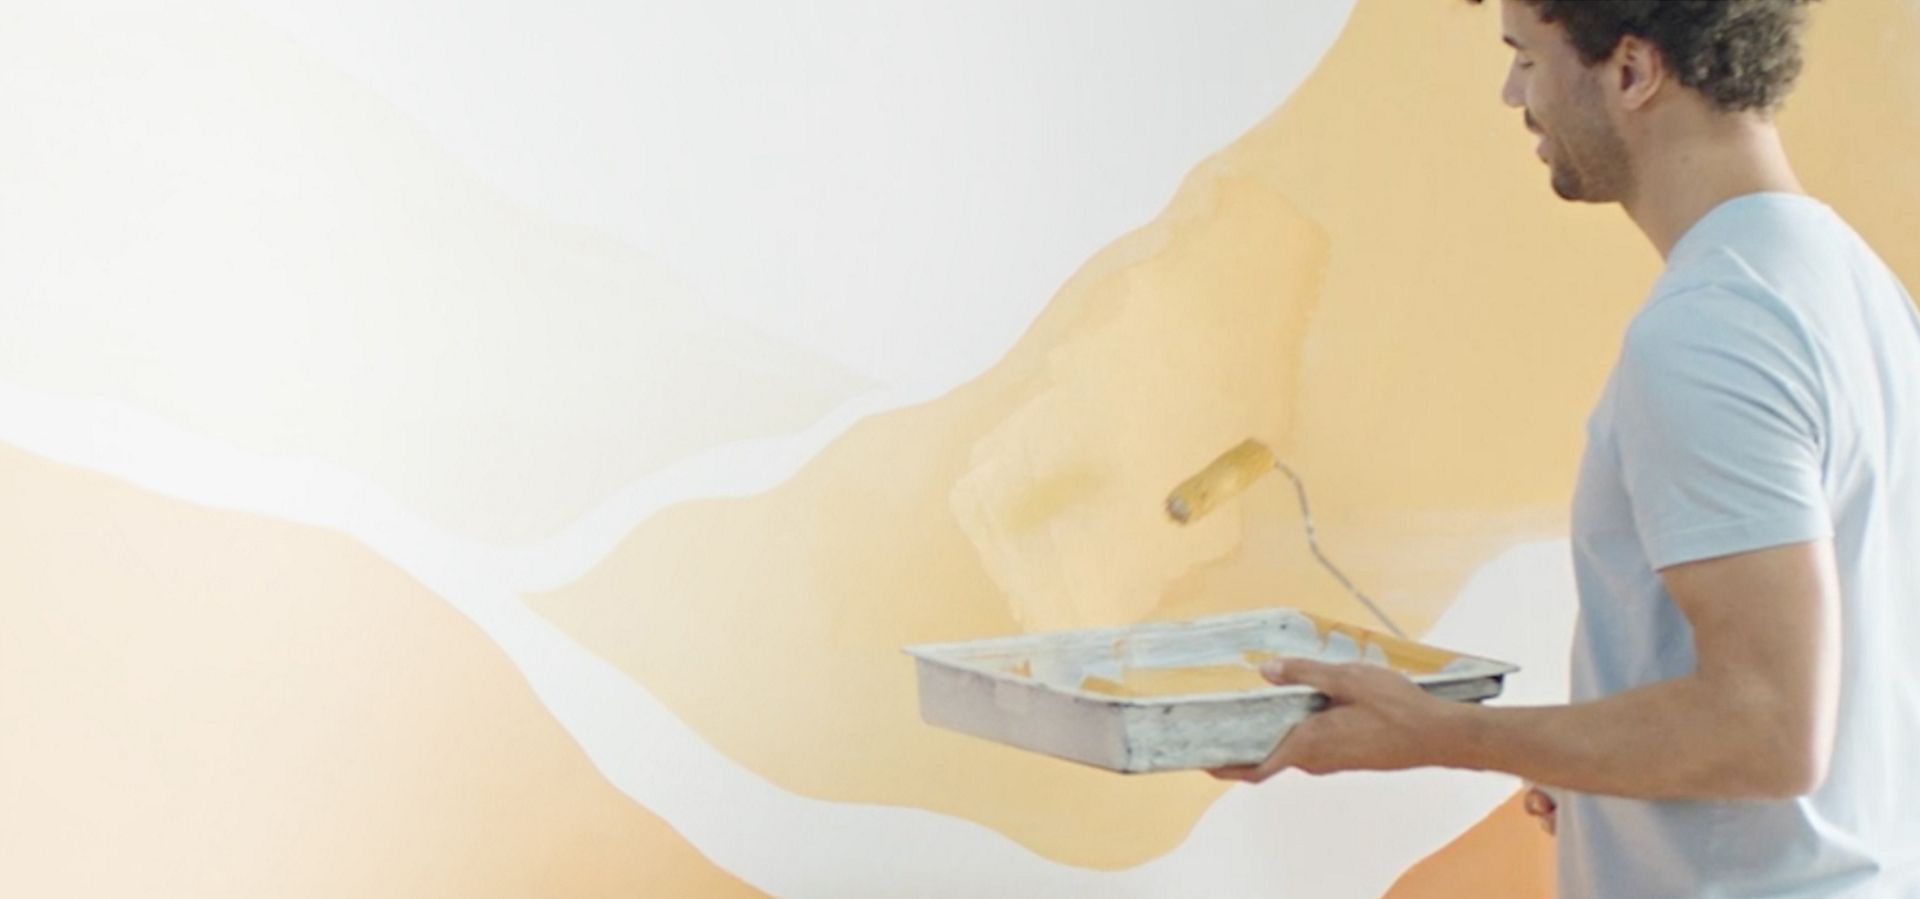 一位男士手持油漆滾筒，正裝飾室內牆壁。